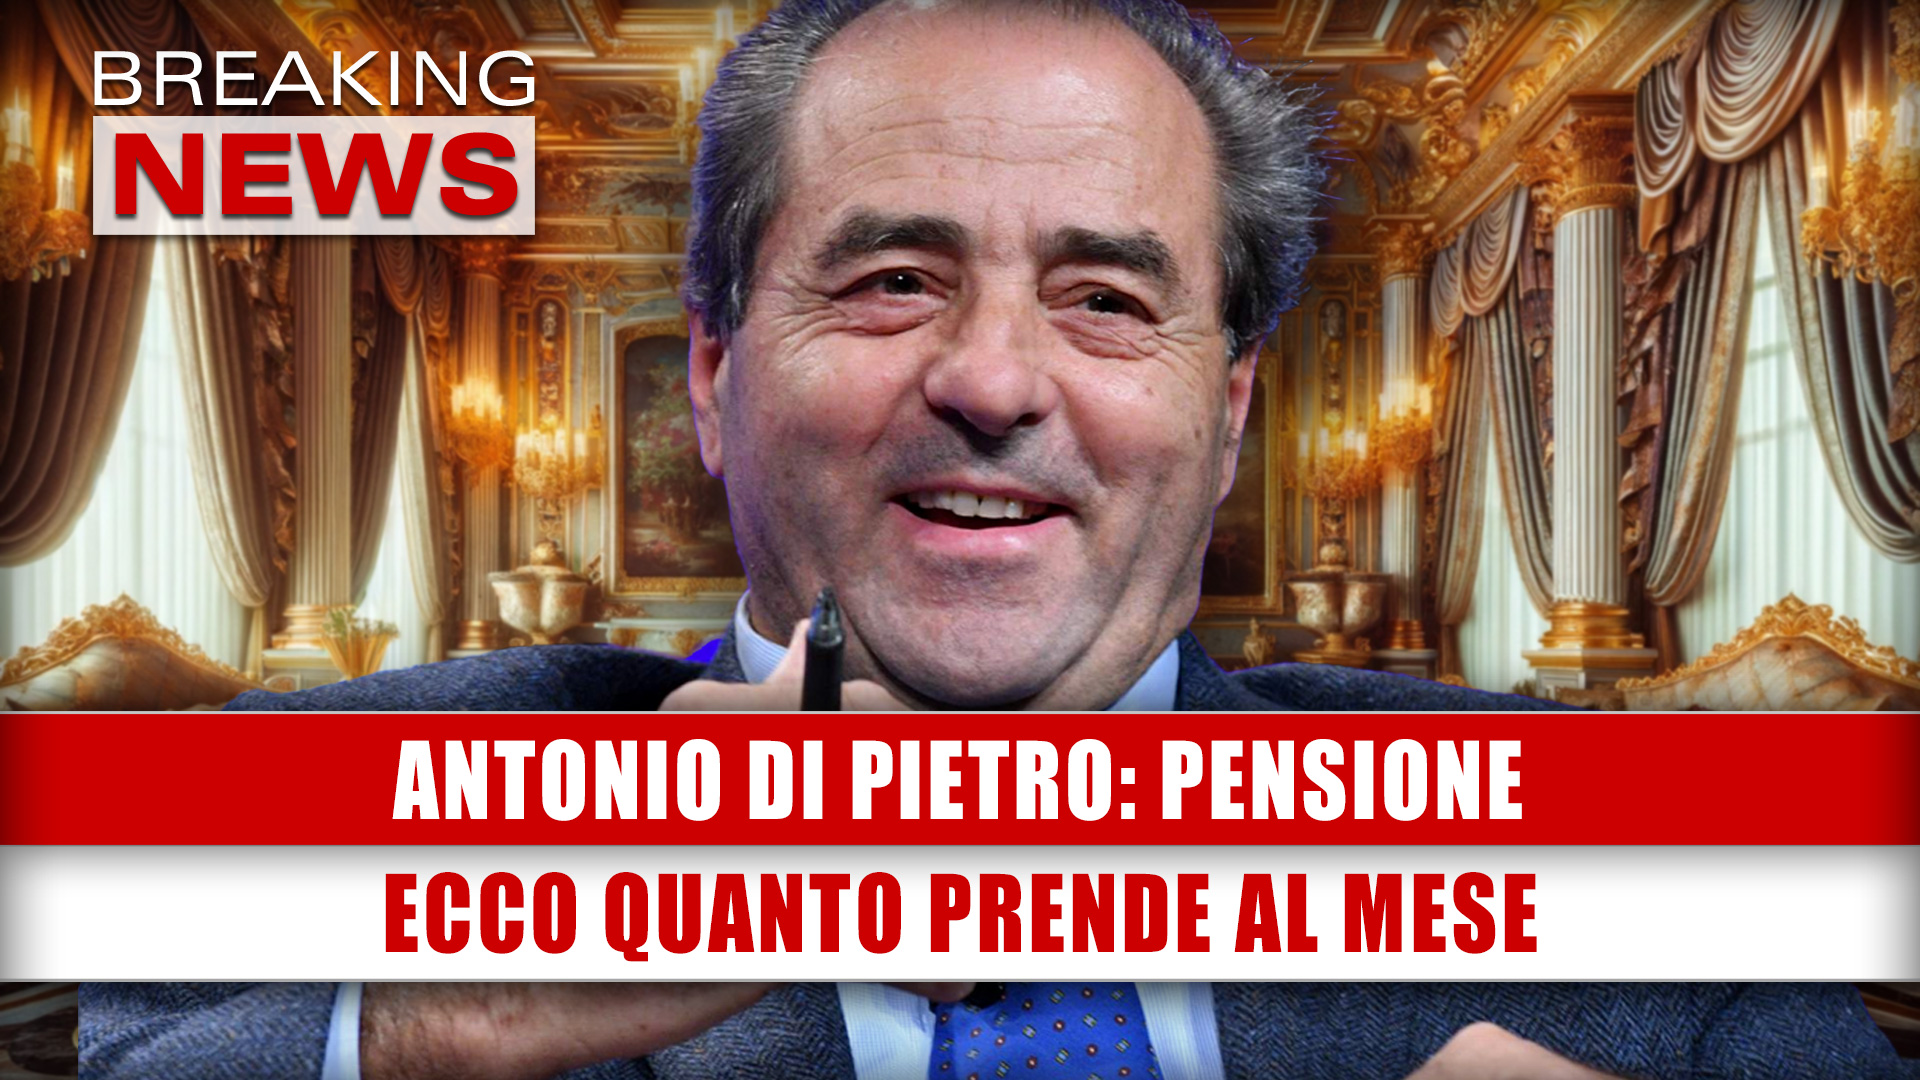 Antonio Di Pietro, Pensione: Ecco Quanto Prende Al Mese!